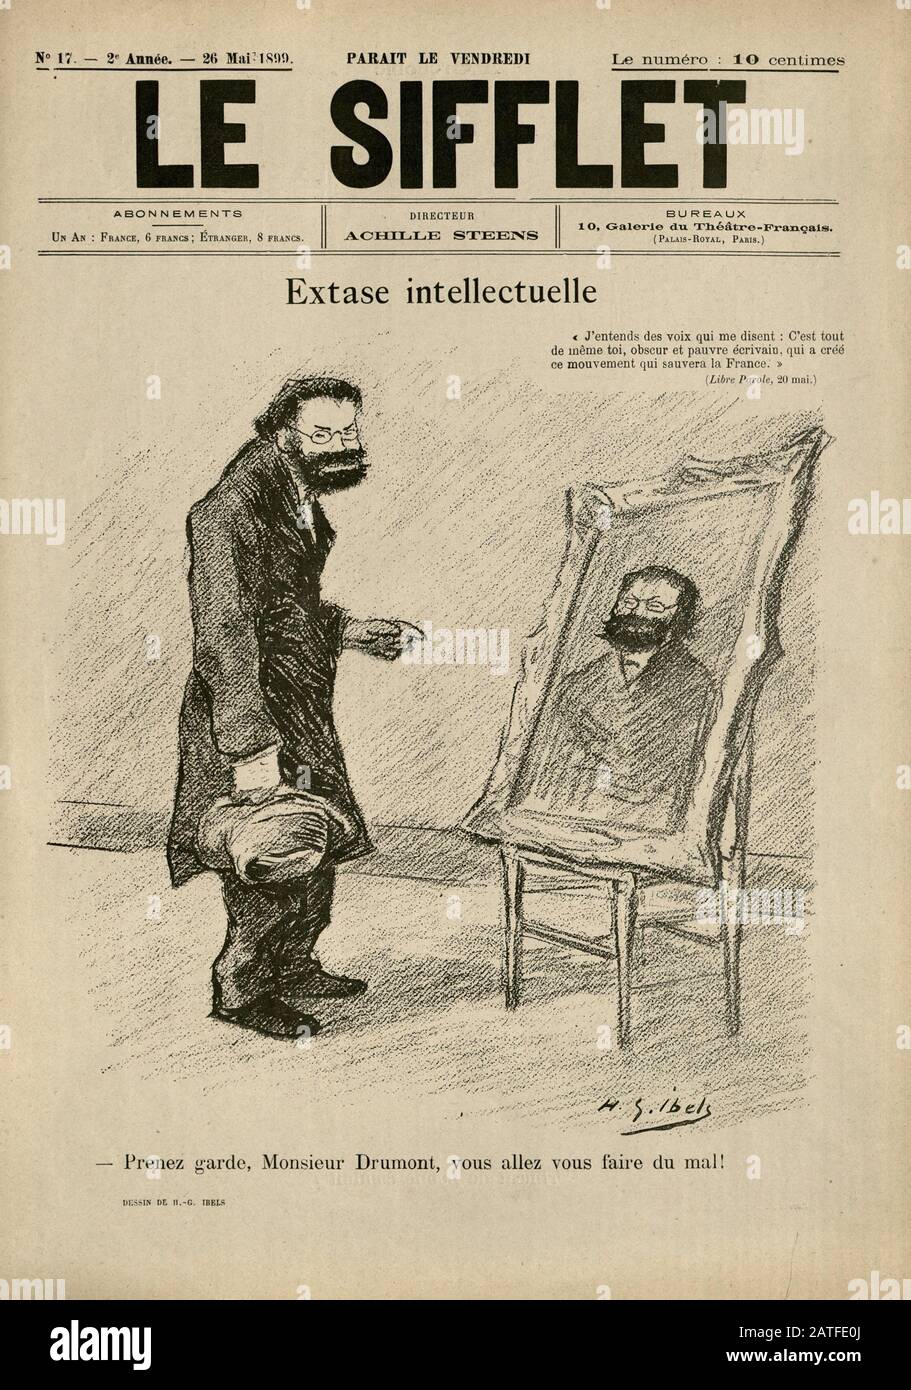 El caso Dreyfus 1894-1906 - Le Sifflet, Mayo 26, 1899 - Periódico Ilustrado francés Foto de stock